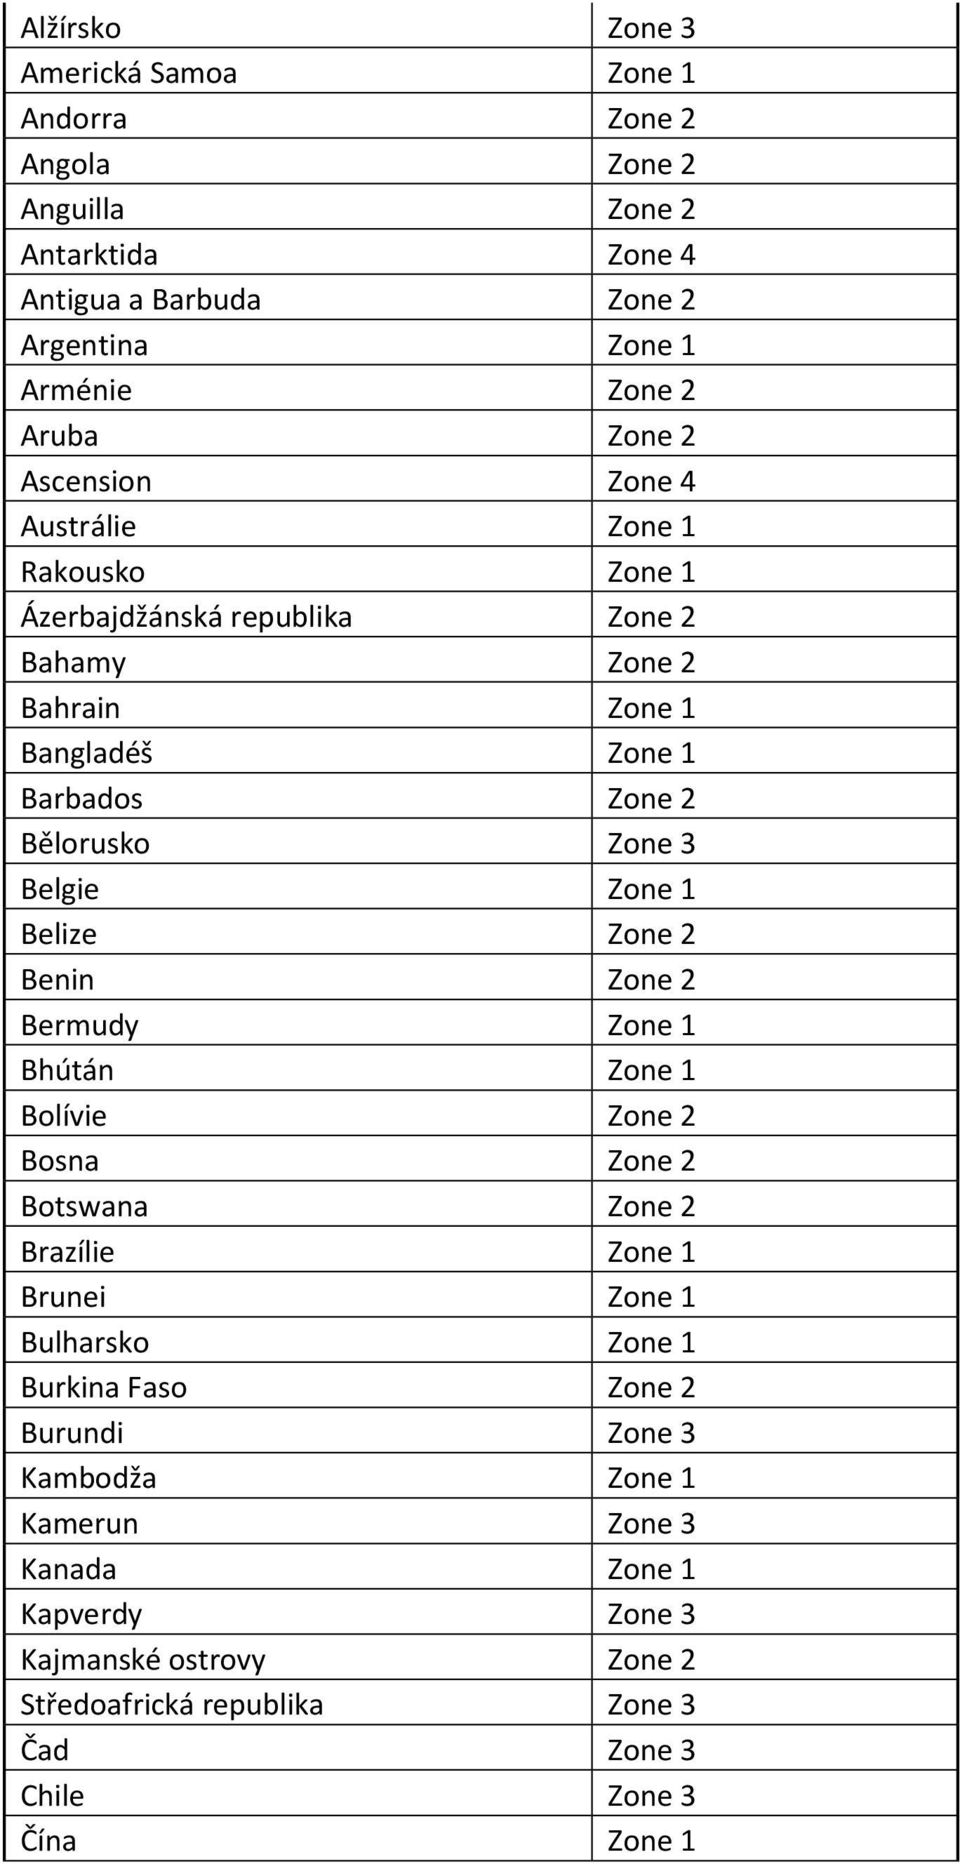 Zone 1 Belize Zone 2 Benin Zone 2 Bermudy Zone 1 Bhútán Zone 1 Bolívie Zone 2 Bosna Zone 2 Botswana Zone 2 Brazílie Zone 1 Brunei Zone 1 Bulharsko Zone 1 Burkina Faso